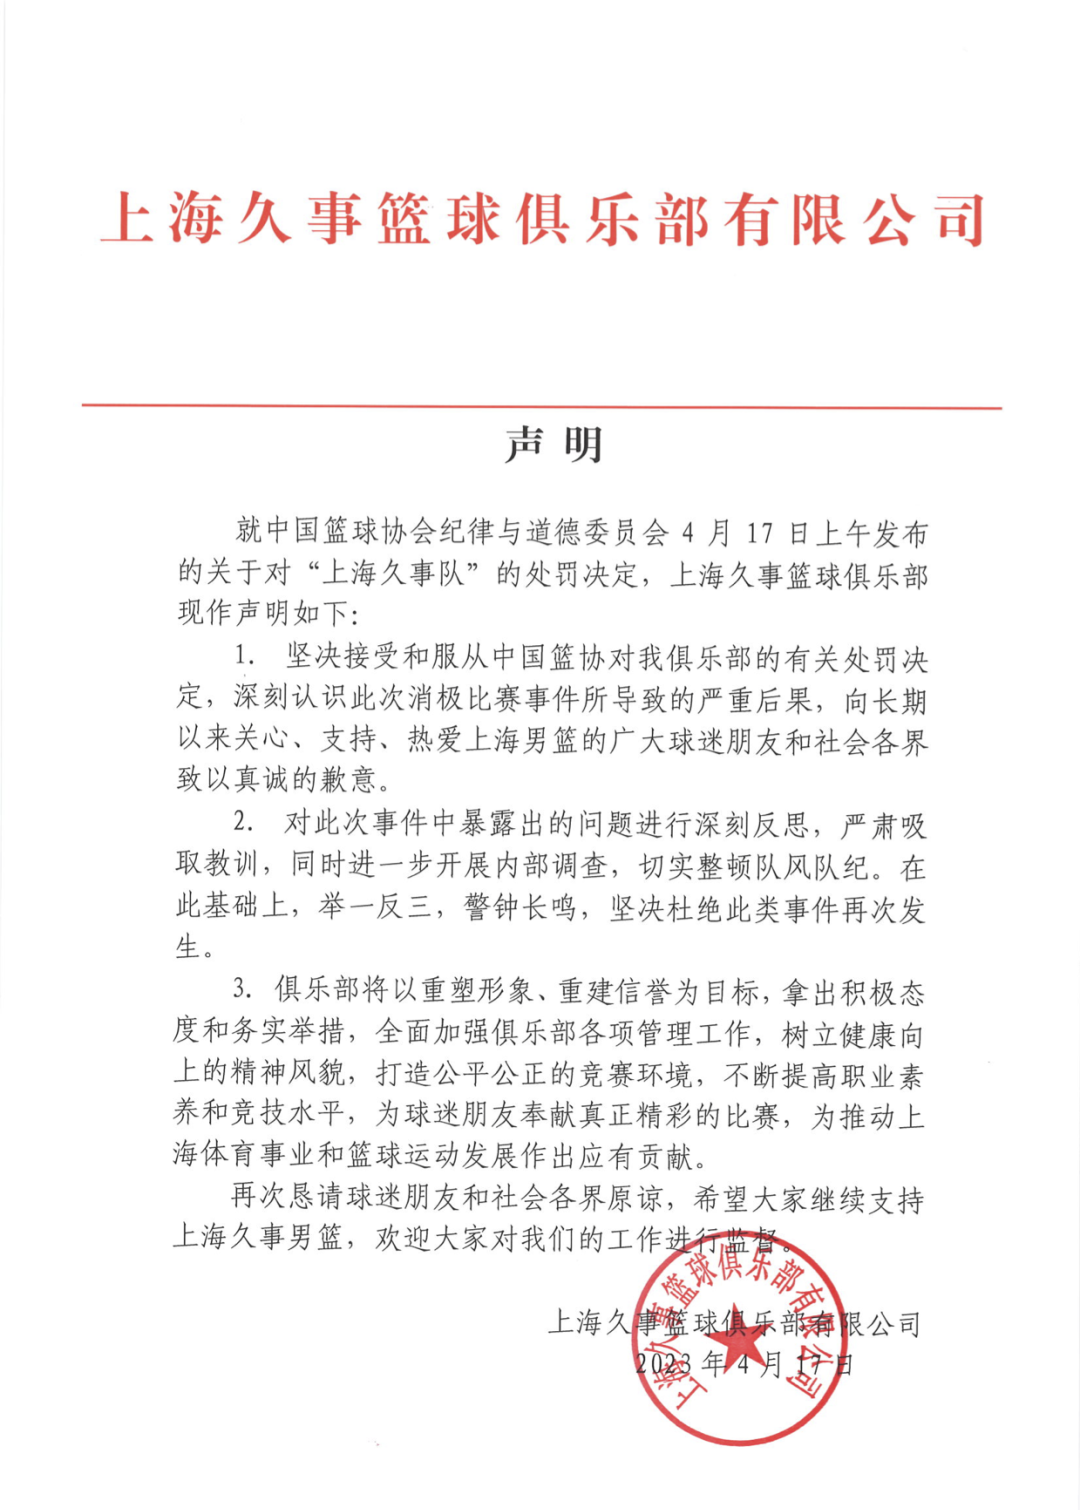 上海久事：坚决接受和服从处罚，进一步开展内部调查